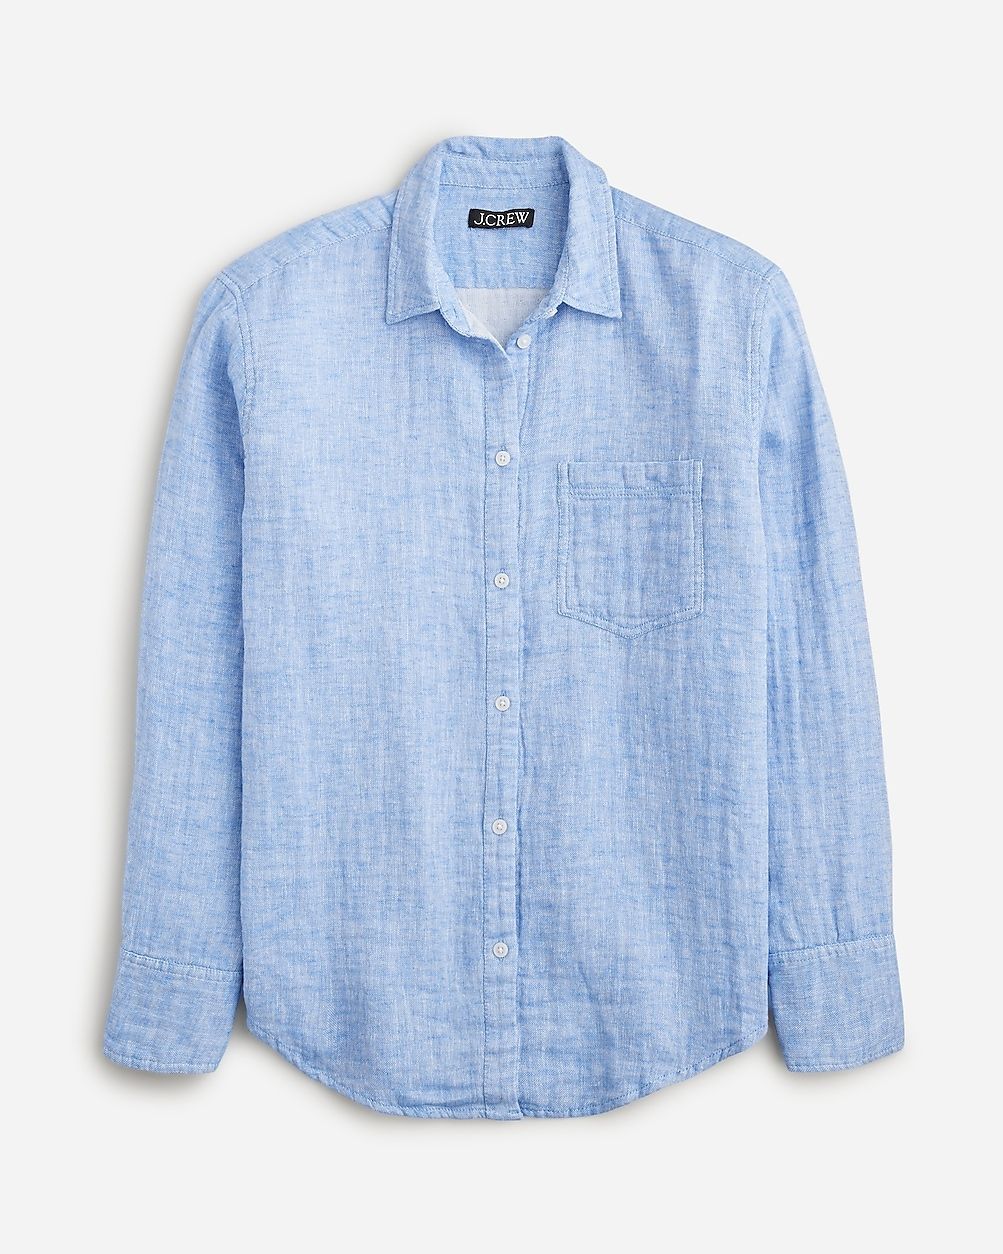 Gar&ccedil;on classic shirt in cotton-linen blend gauze | J.Crew US